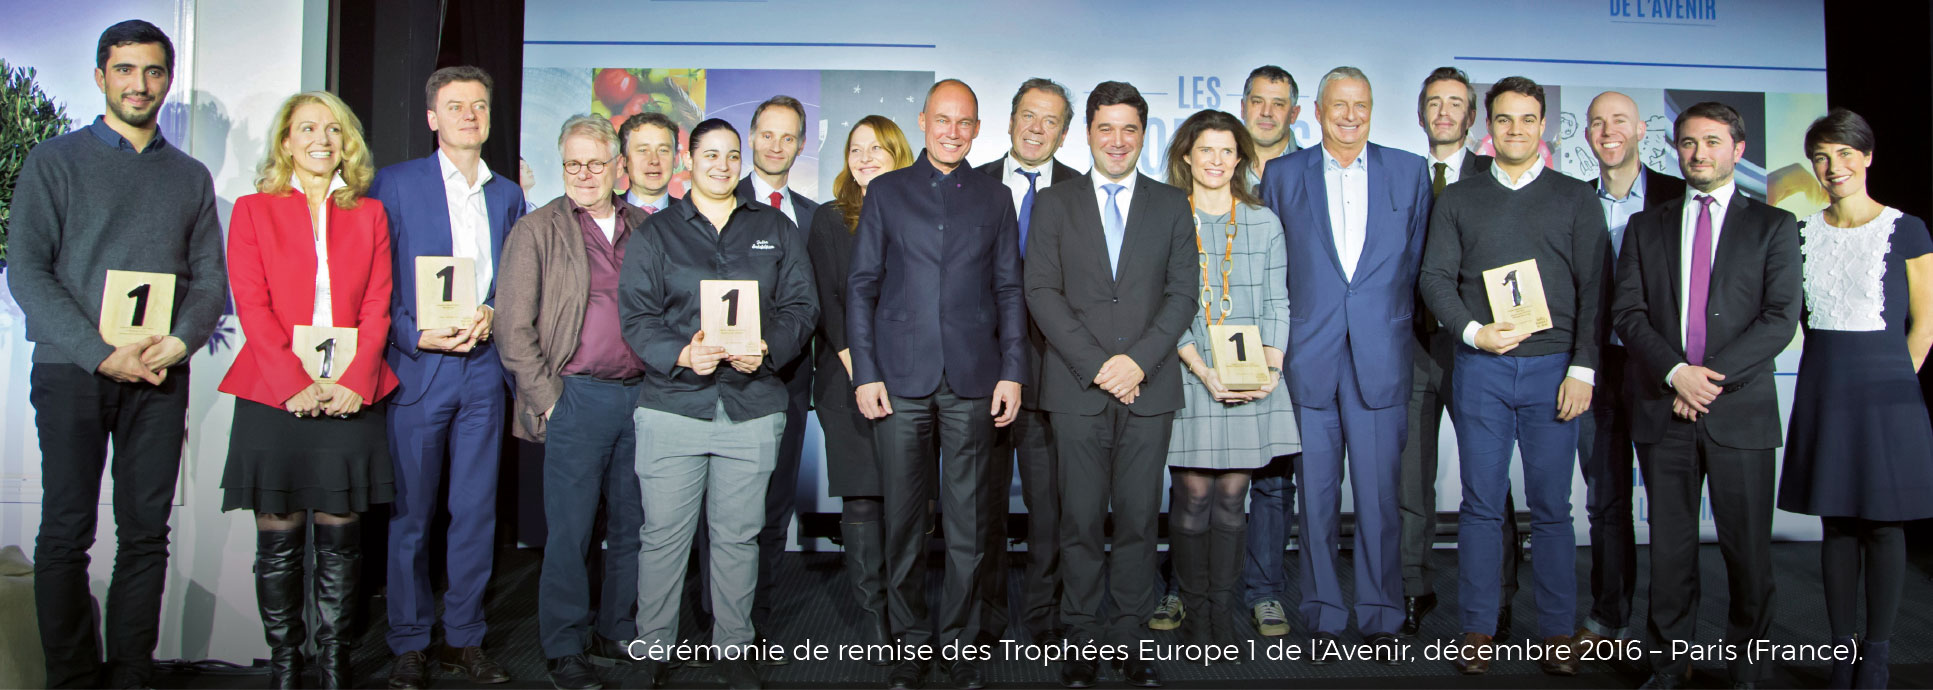 Cérémonie de remise des Trophées Europe 1 de l’Avenir, décembre 2016 – Paris (France)